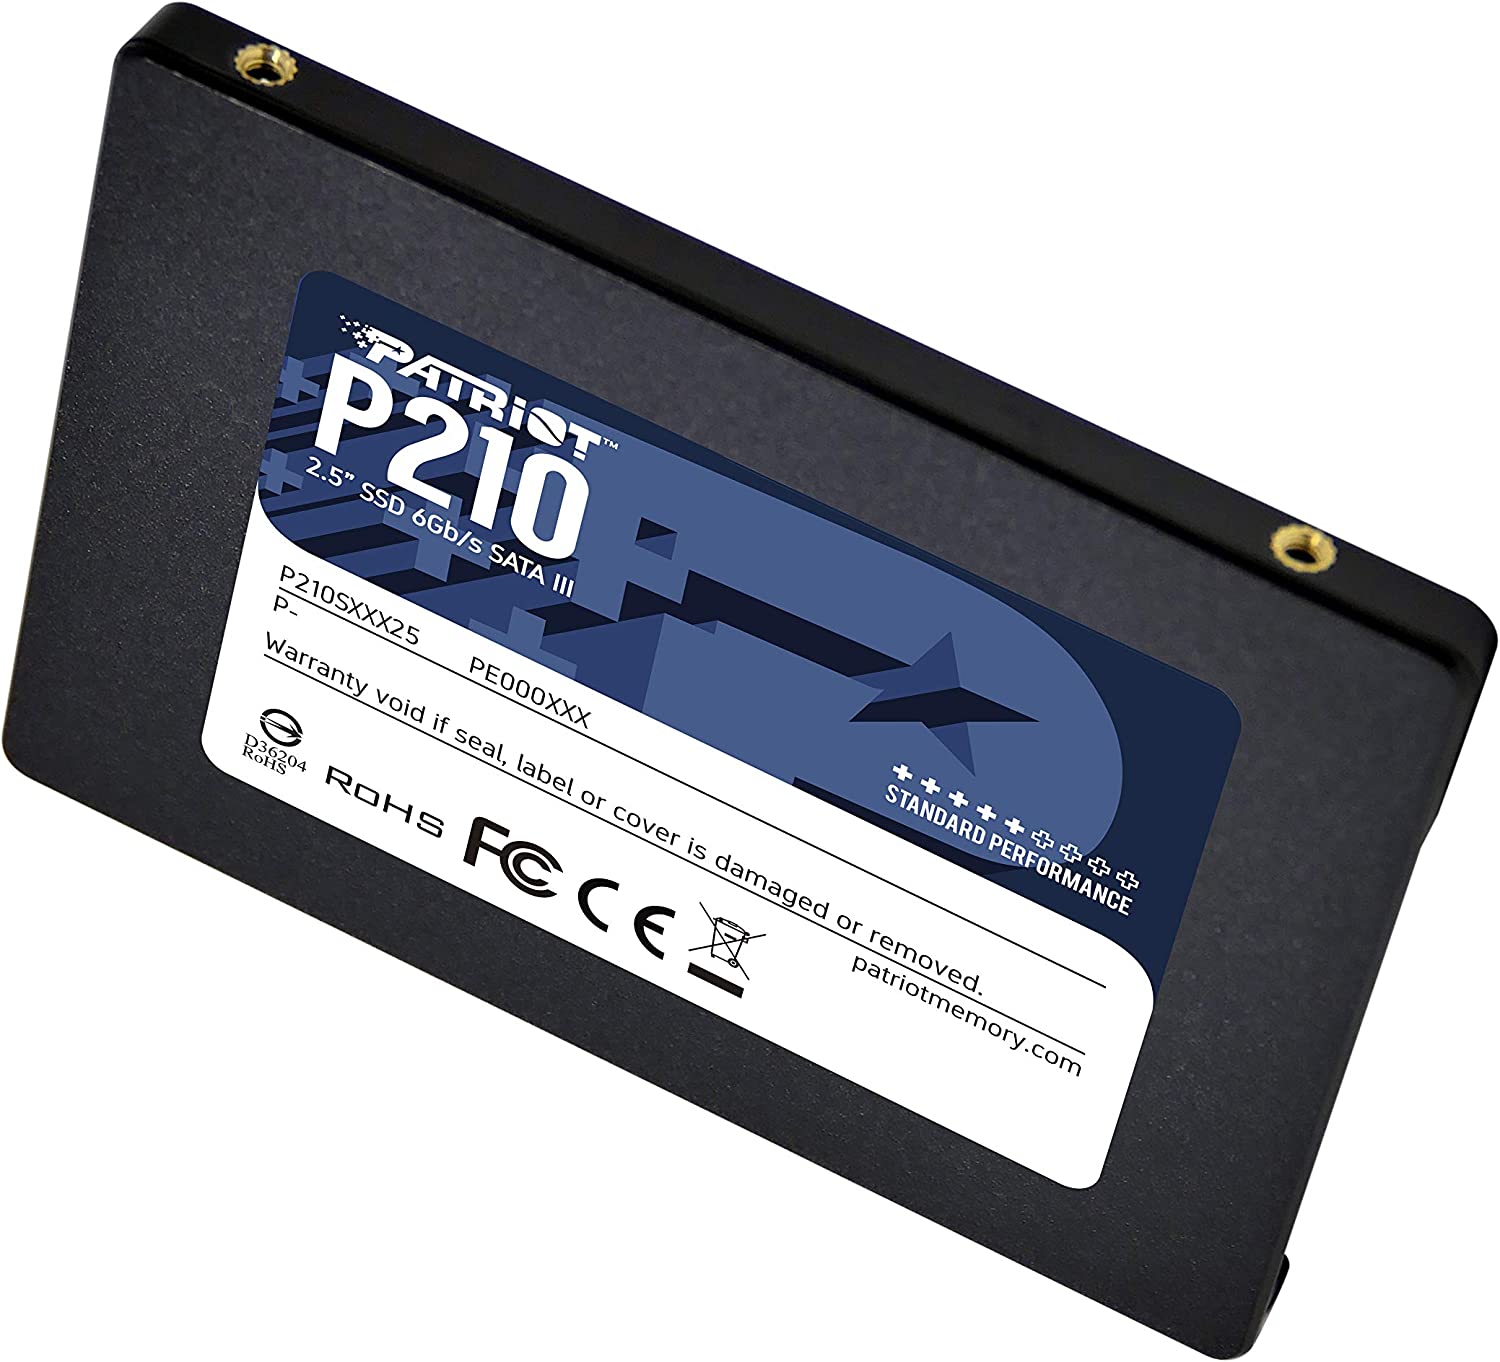 El Patriot SSD P210 512GB SATA3 2.5 es un disco de estado sólido (SSD) de 512 GB de capacidad y con una interfaz SATA3 de 2.5 pulgadas. 